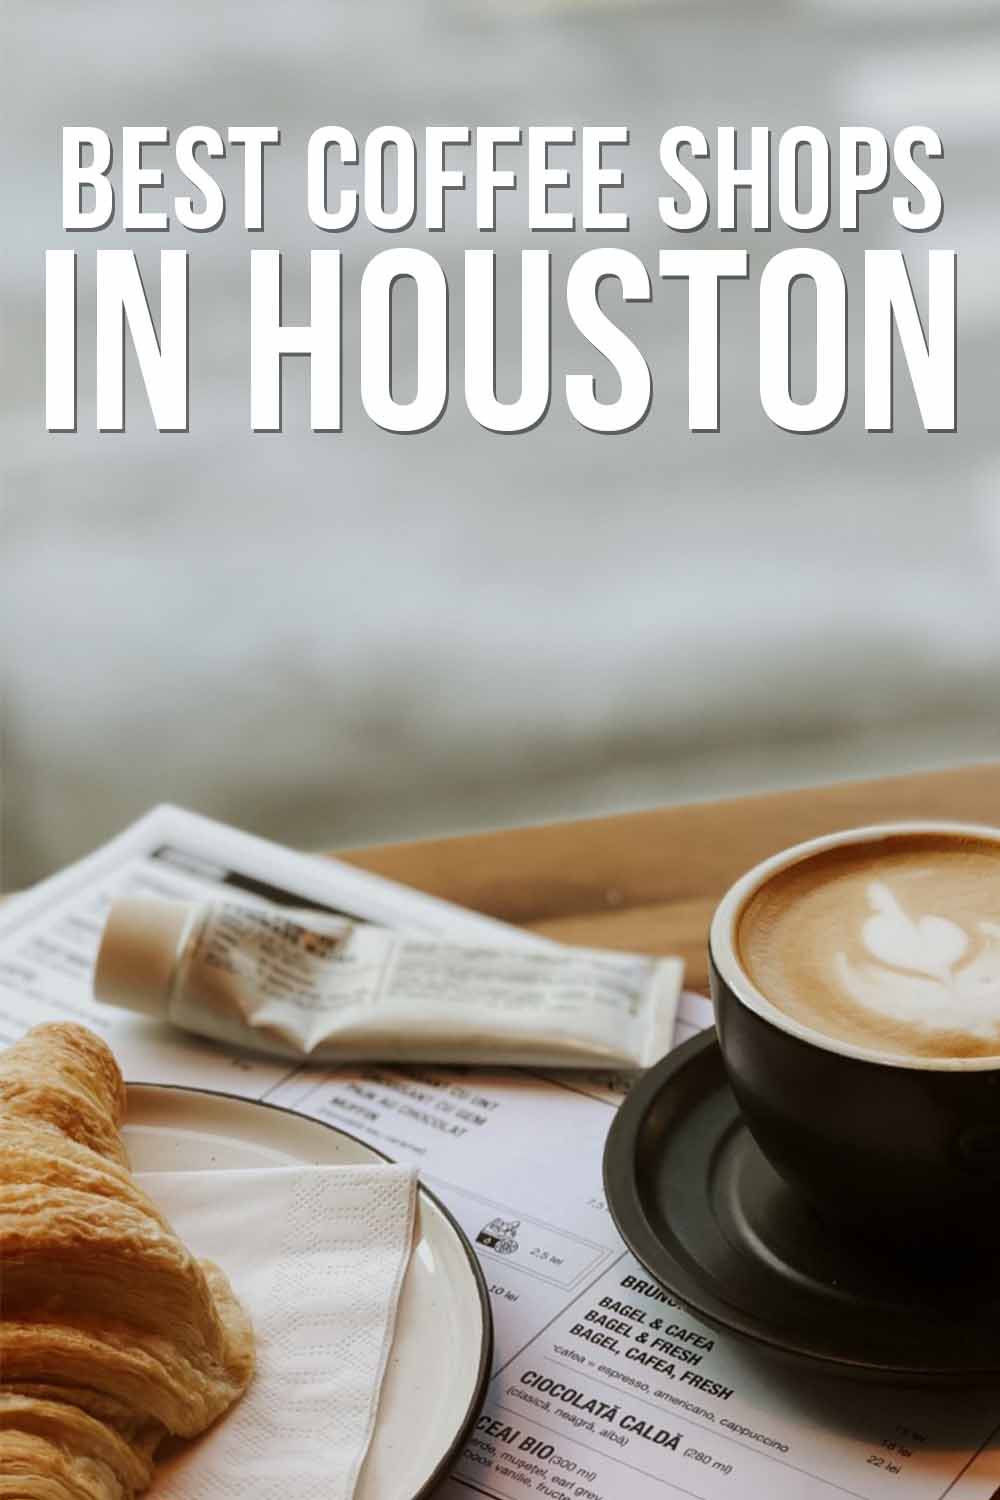 Best Coffee Shops in Houston